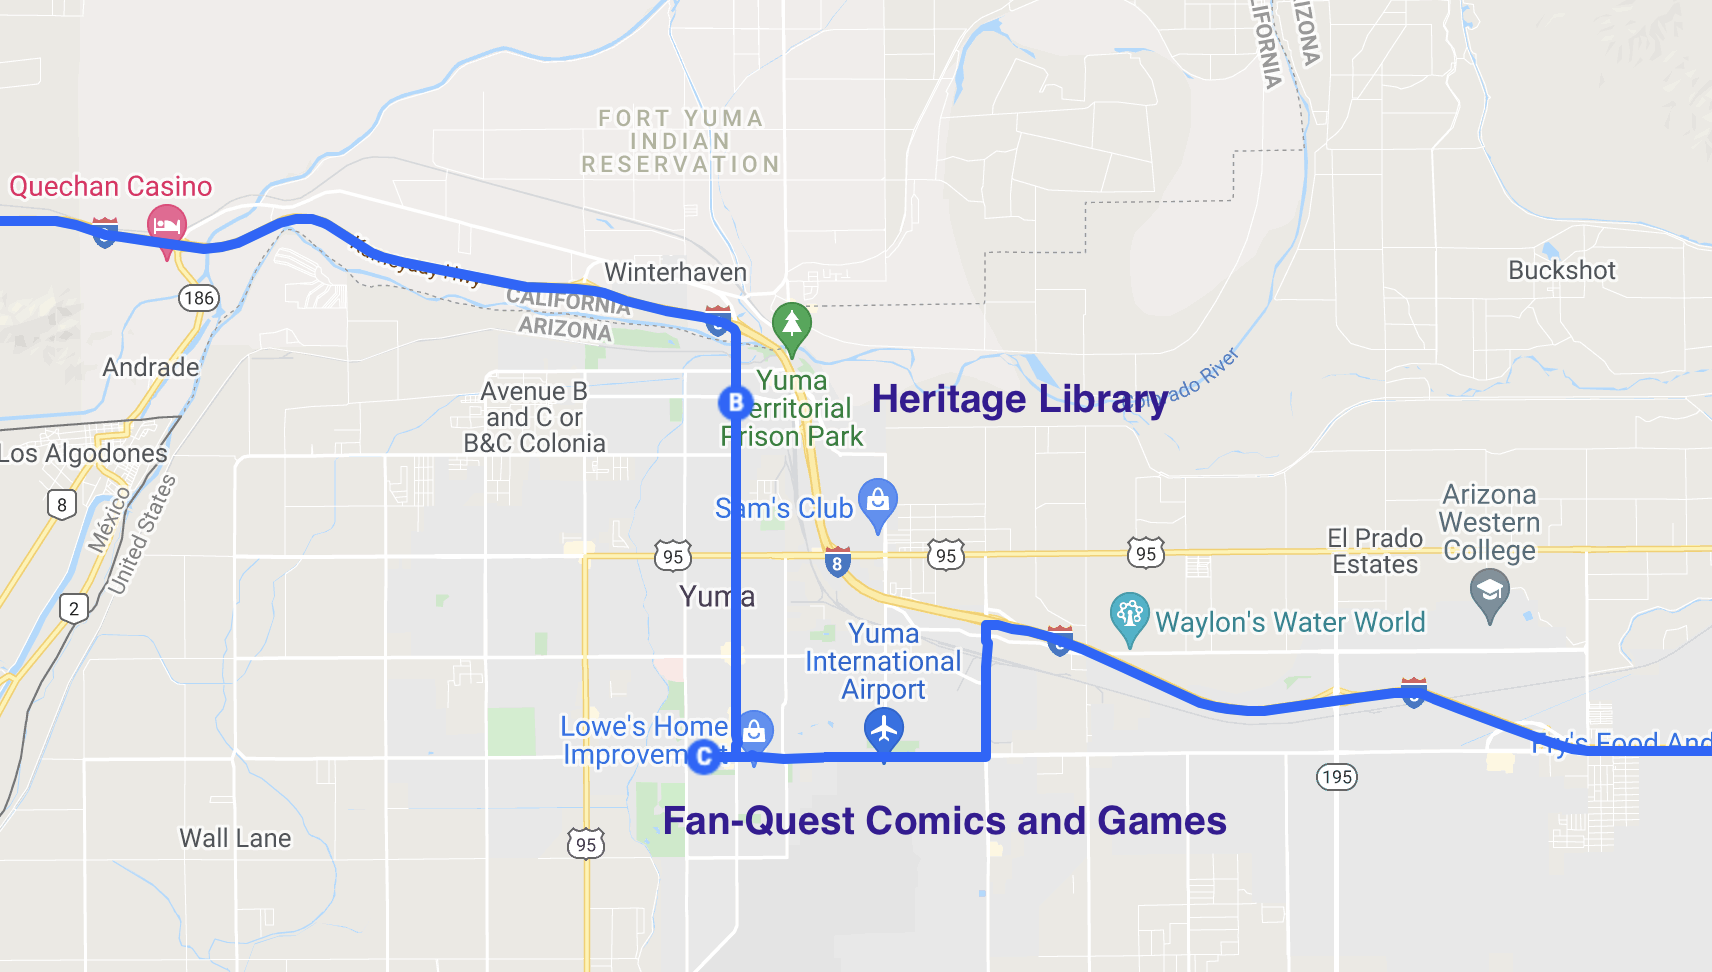 map of literary spots in yuma arizona 